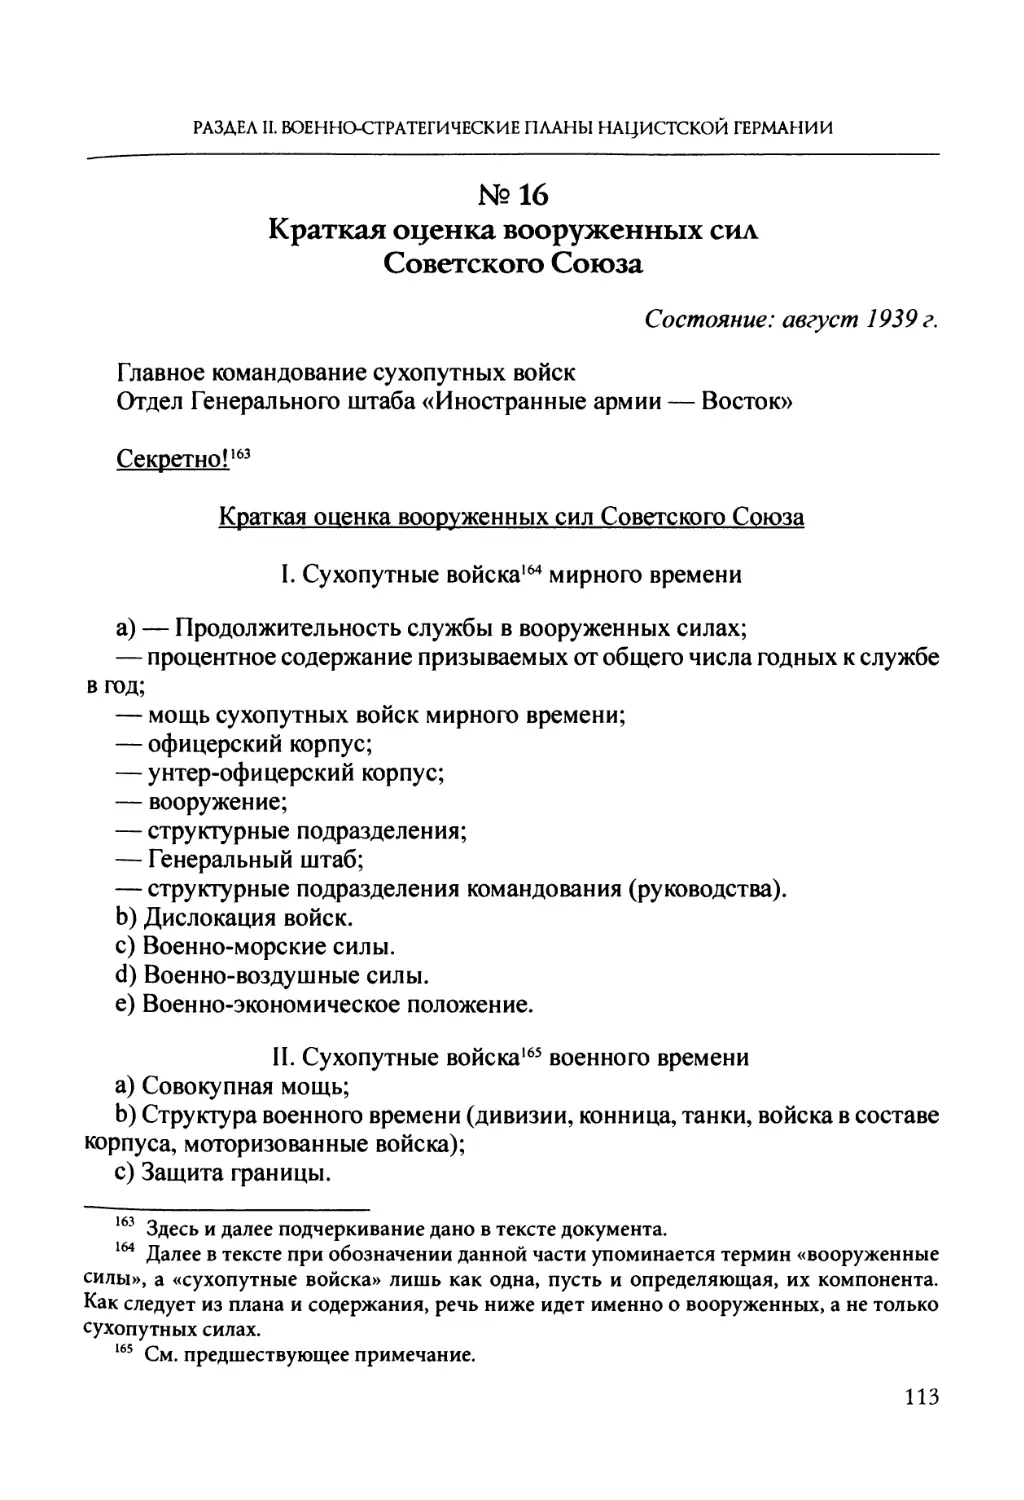 №16. Краткая оценка вооруженных сил Советского Союза